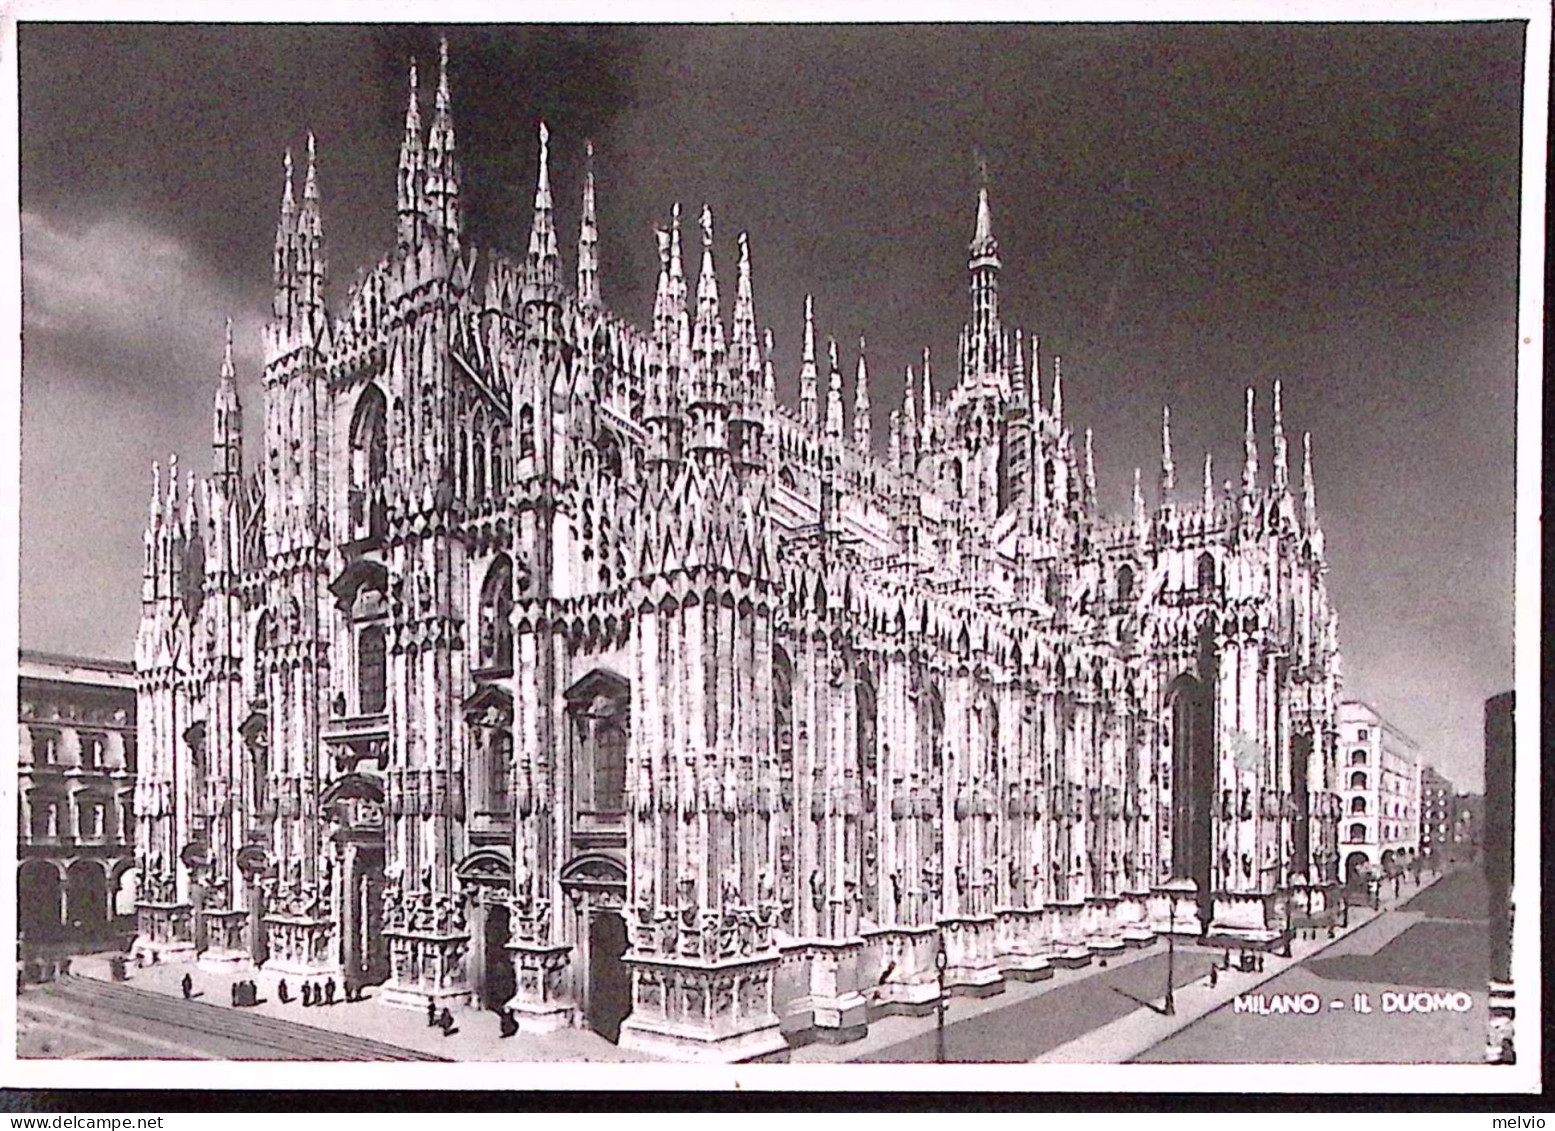 1945-Imperiale Senza Fasci Tre Lire 1 Su Cartolina (Milano Il Duomo) Per La Fran - Marcofilie